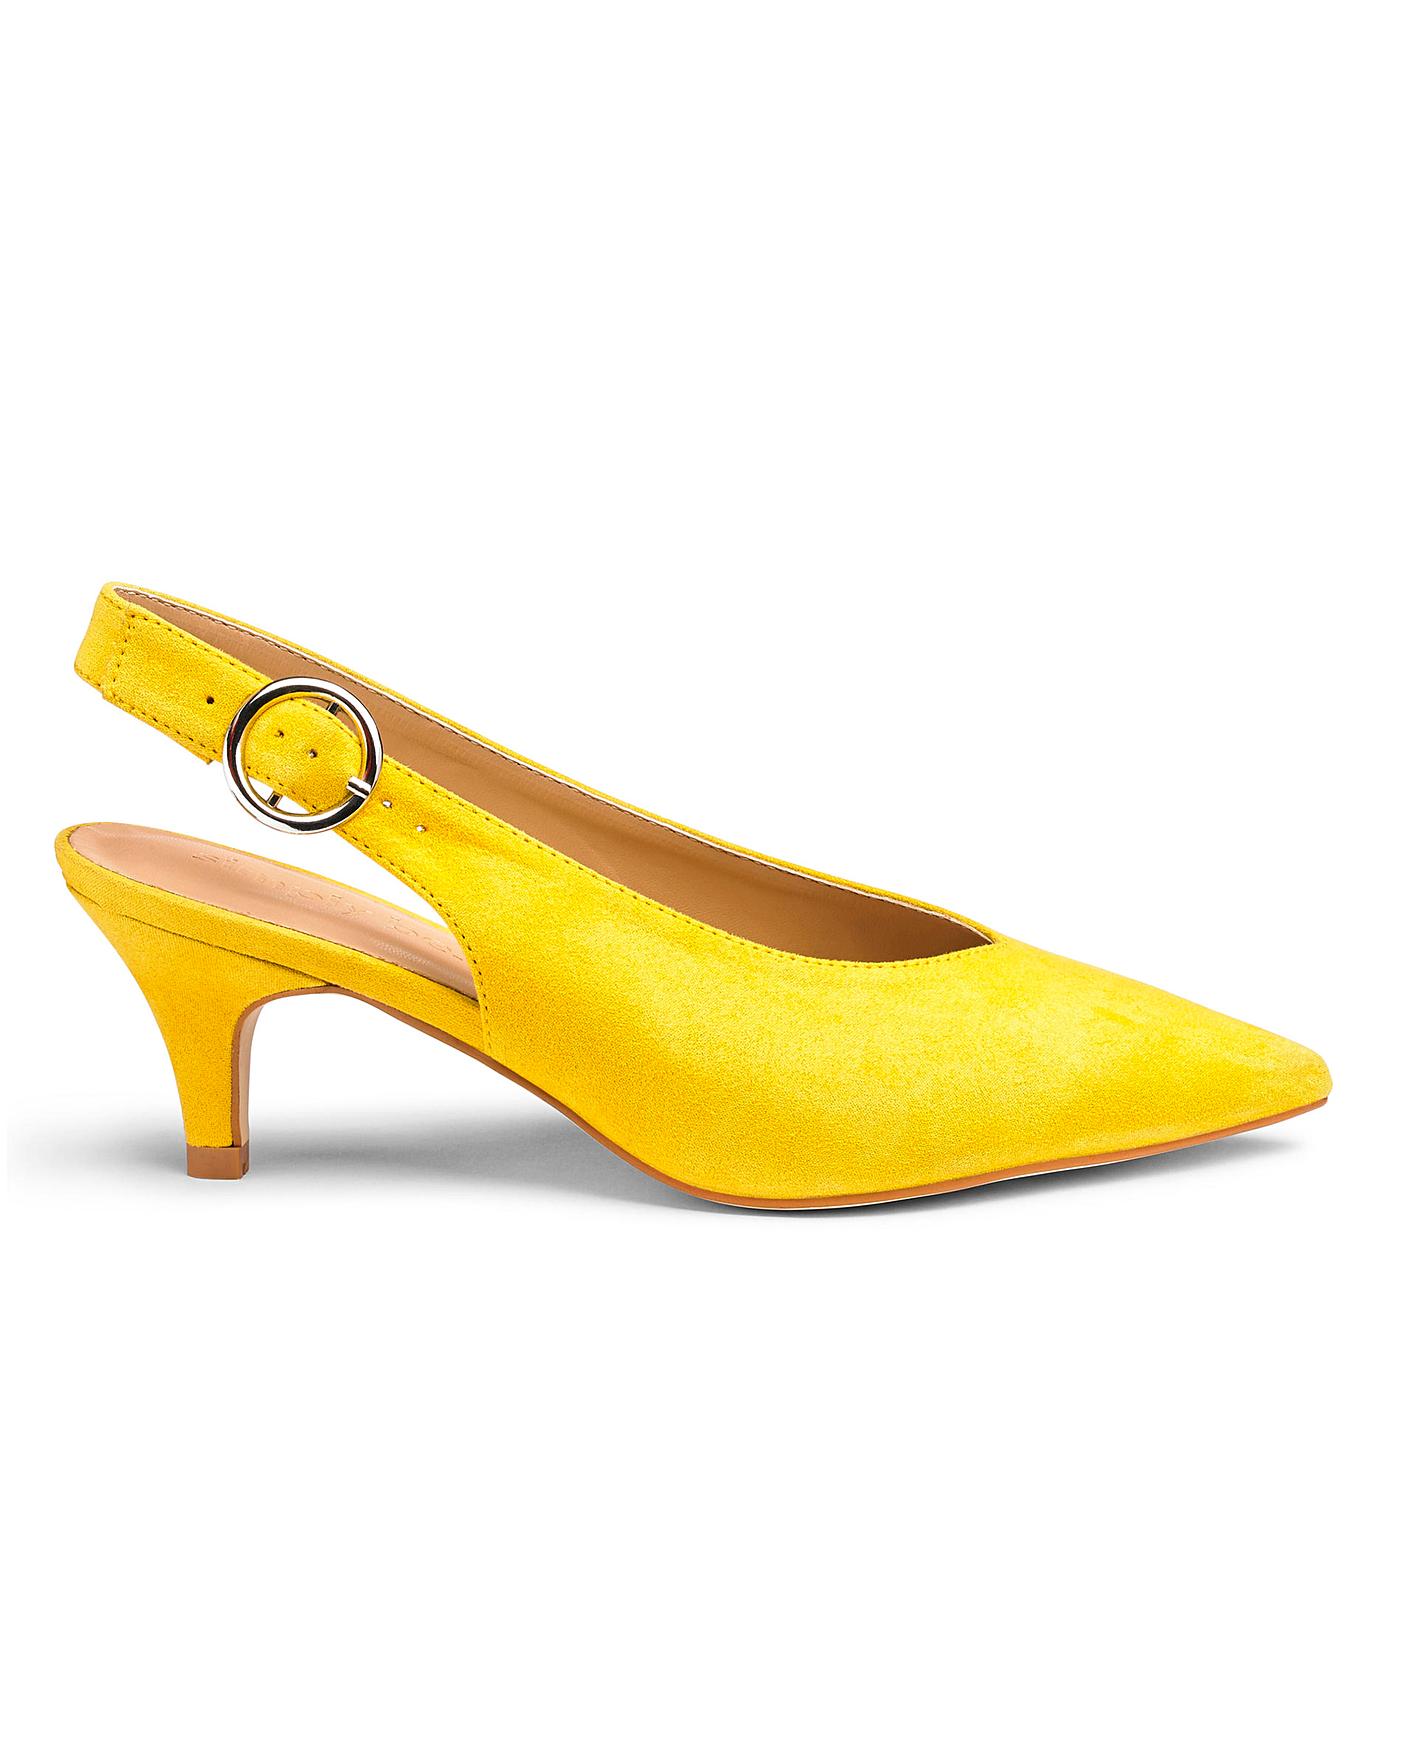 yellow slingback kitten heels